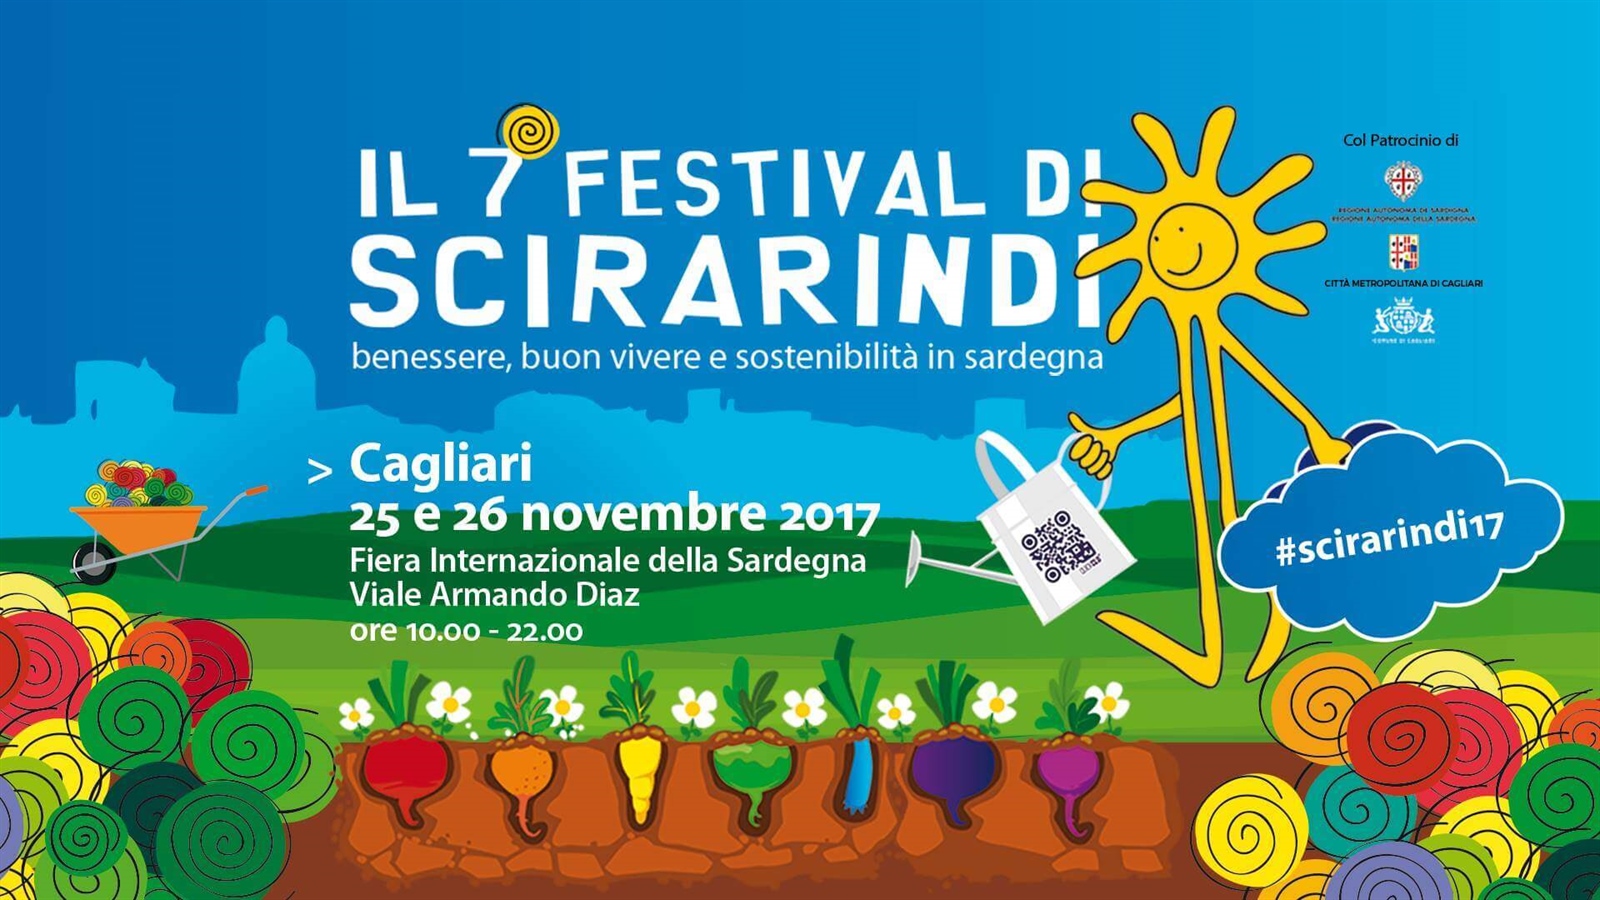 Festival of Scirarindi 2017